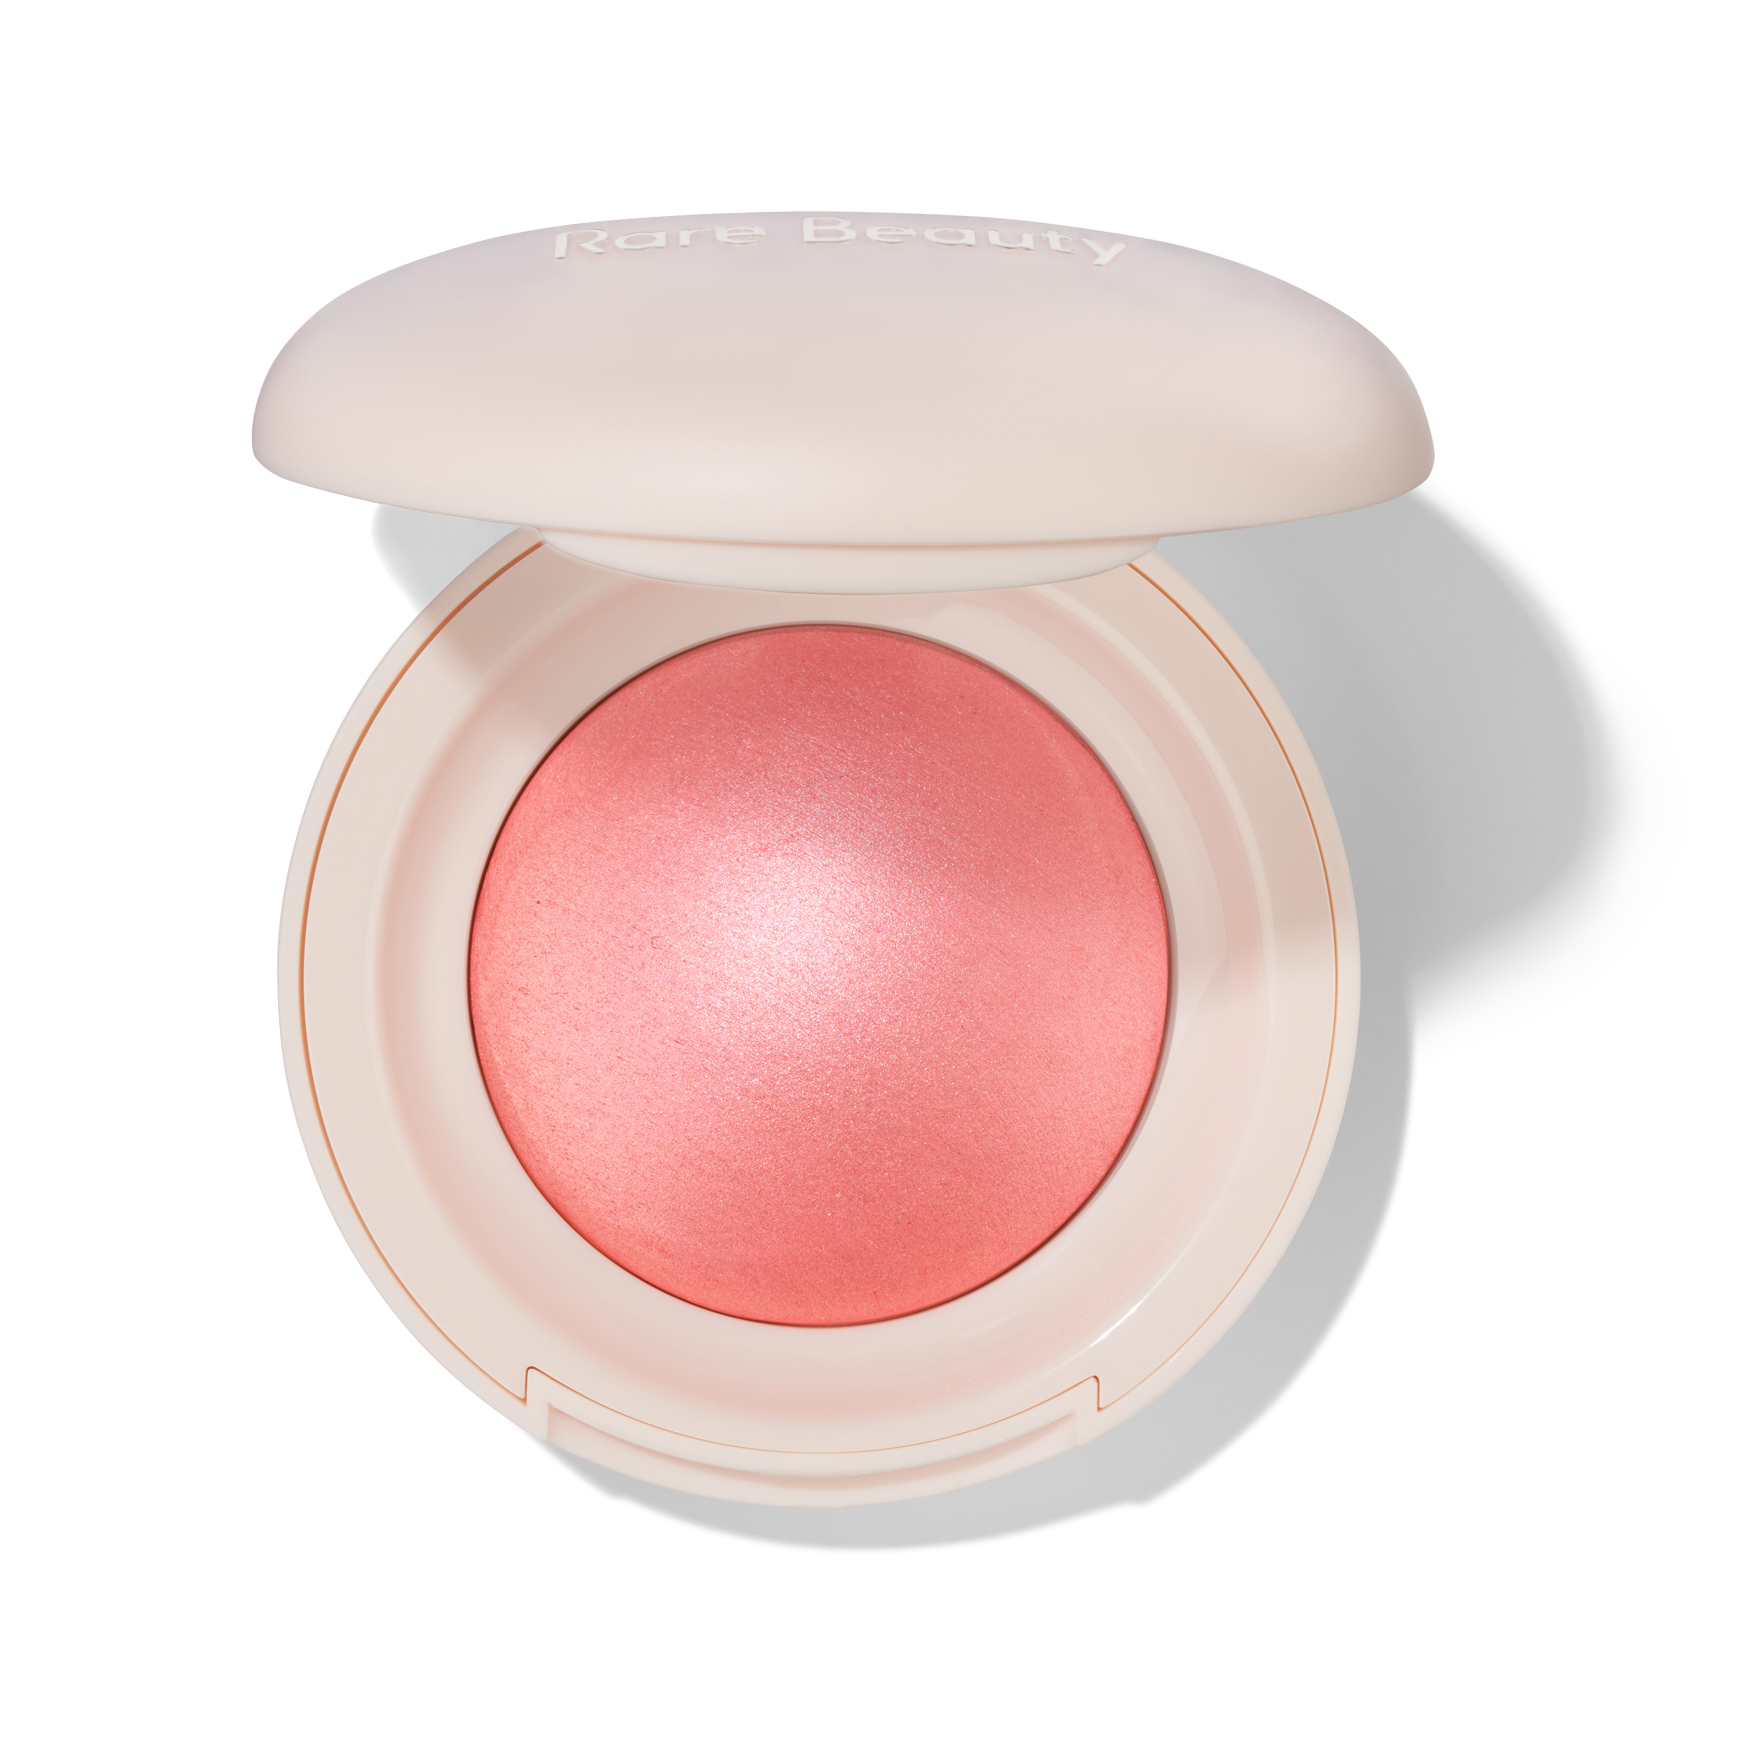 Rare Beauty Soft Pinch Luminous Powder Blush | Space NK